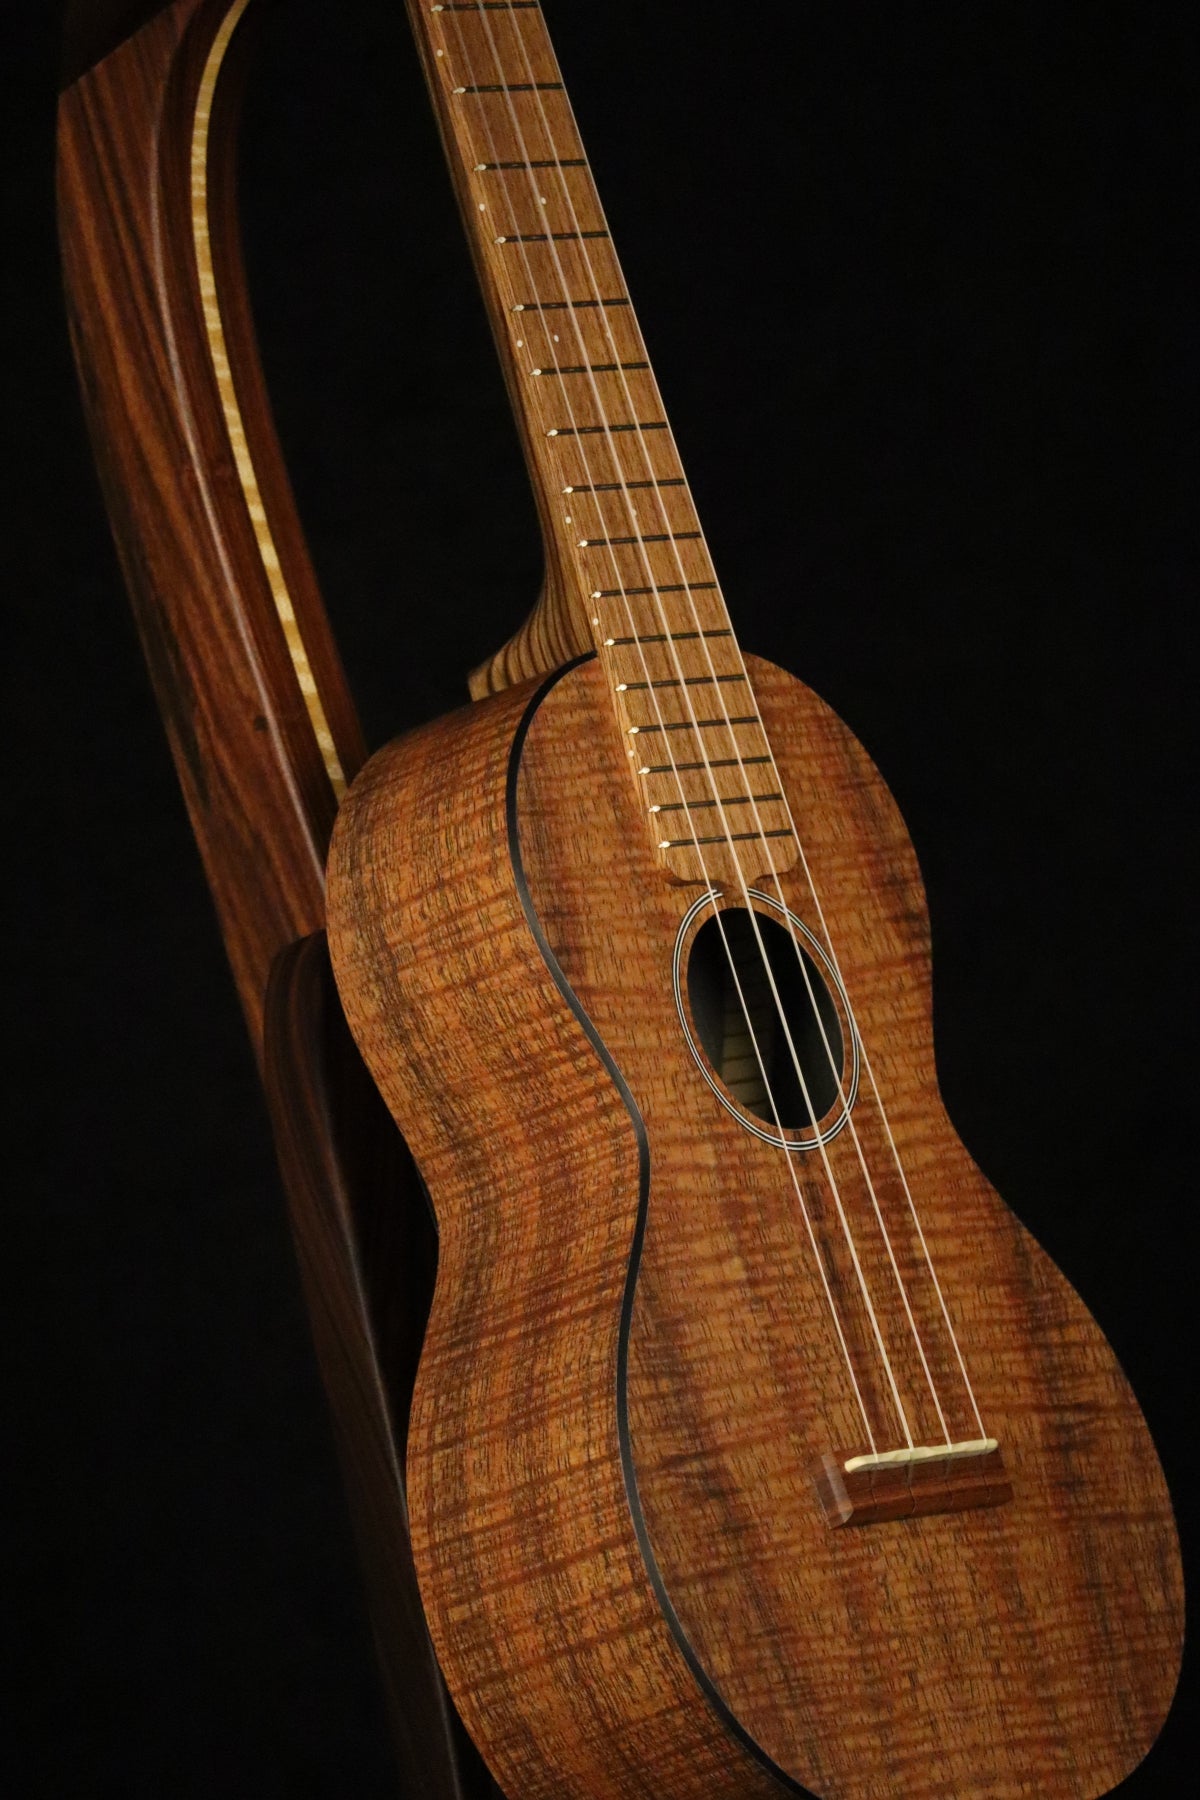 Folding morado Bolivian rosewood pau fero and curly maple wood ukulele floor stand closeup front image with Martin ukulele